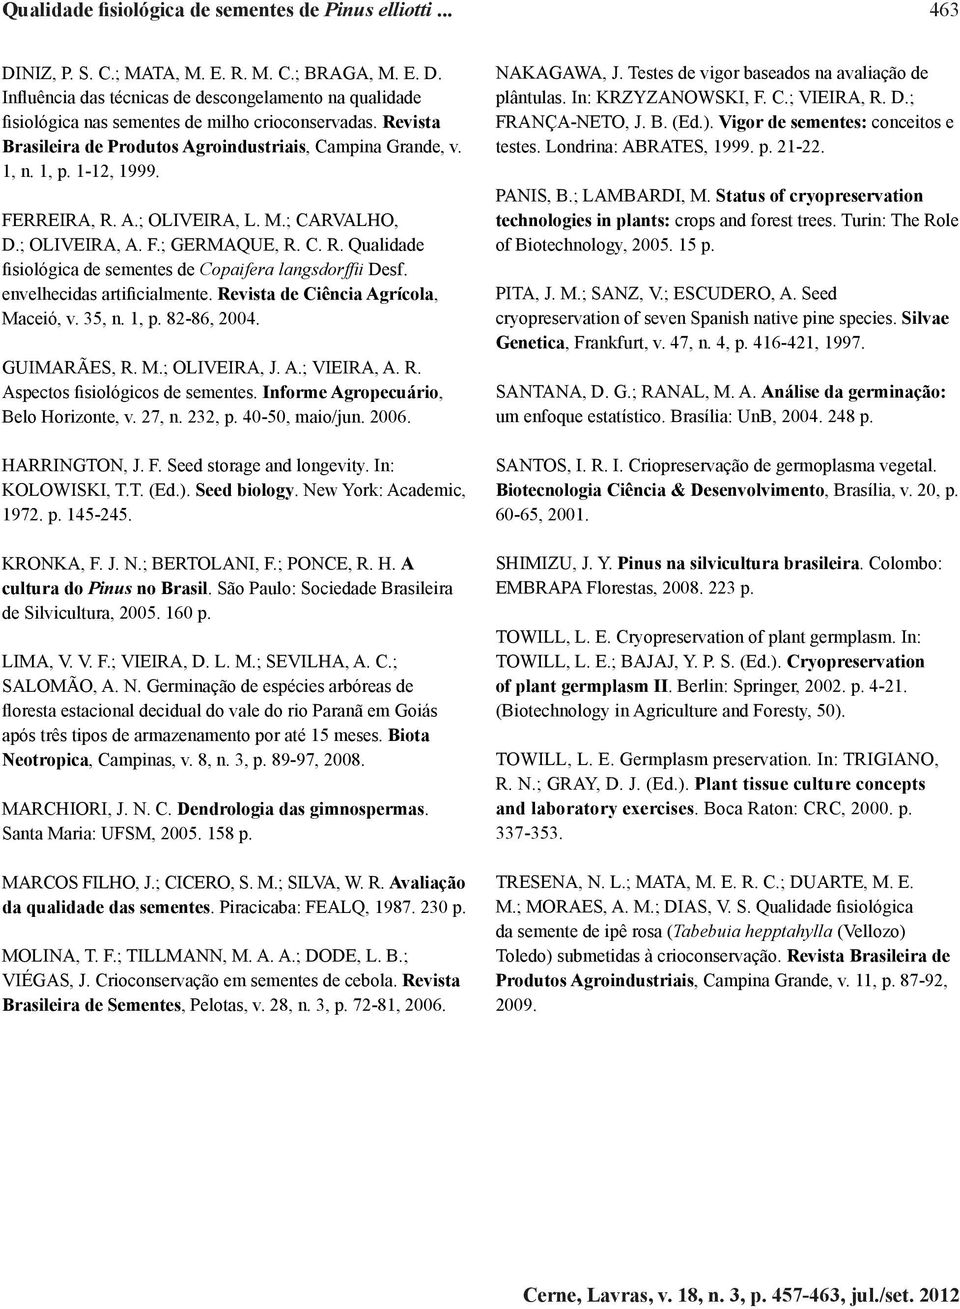 envelhecidas artificialmente. Revista de Ciência Agrícola, Maceió, v. 35, n. 1, p. 82-86, 2004. GUIMARÃES, R. M.; OLIVEIRA, J. A.; VIEIRA, A. R. Aspectos fisiológicos de sementes.